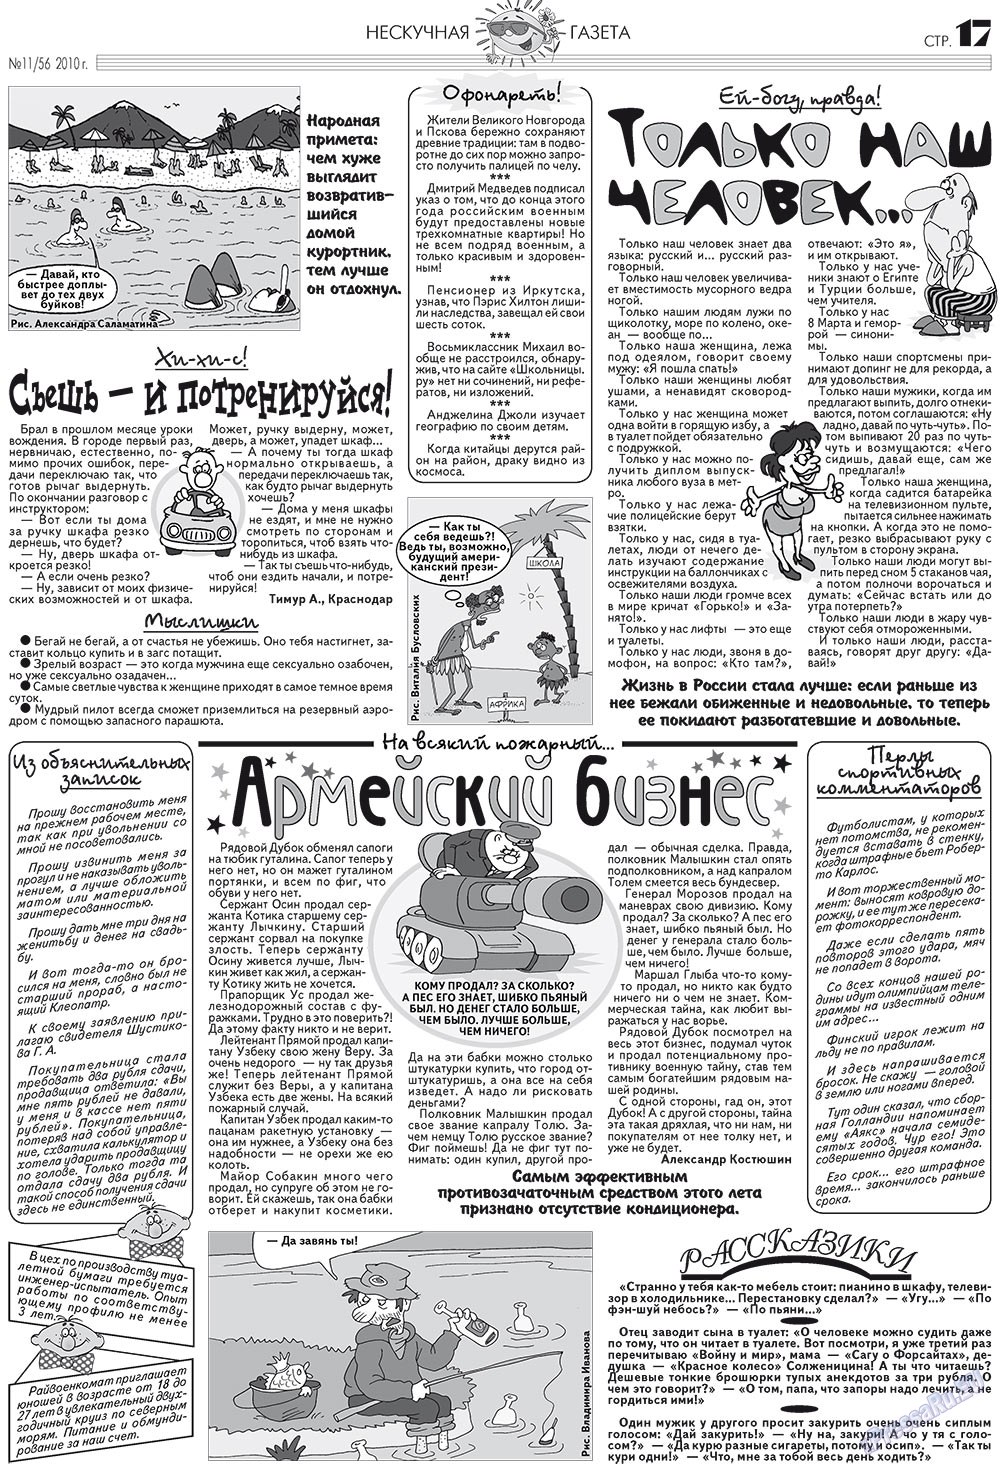 Нескучная газета (журнал). 2010 год, номер 11, стр. 17